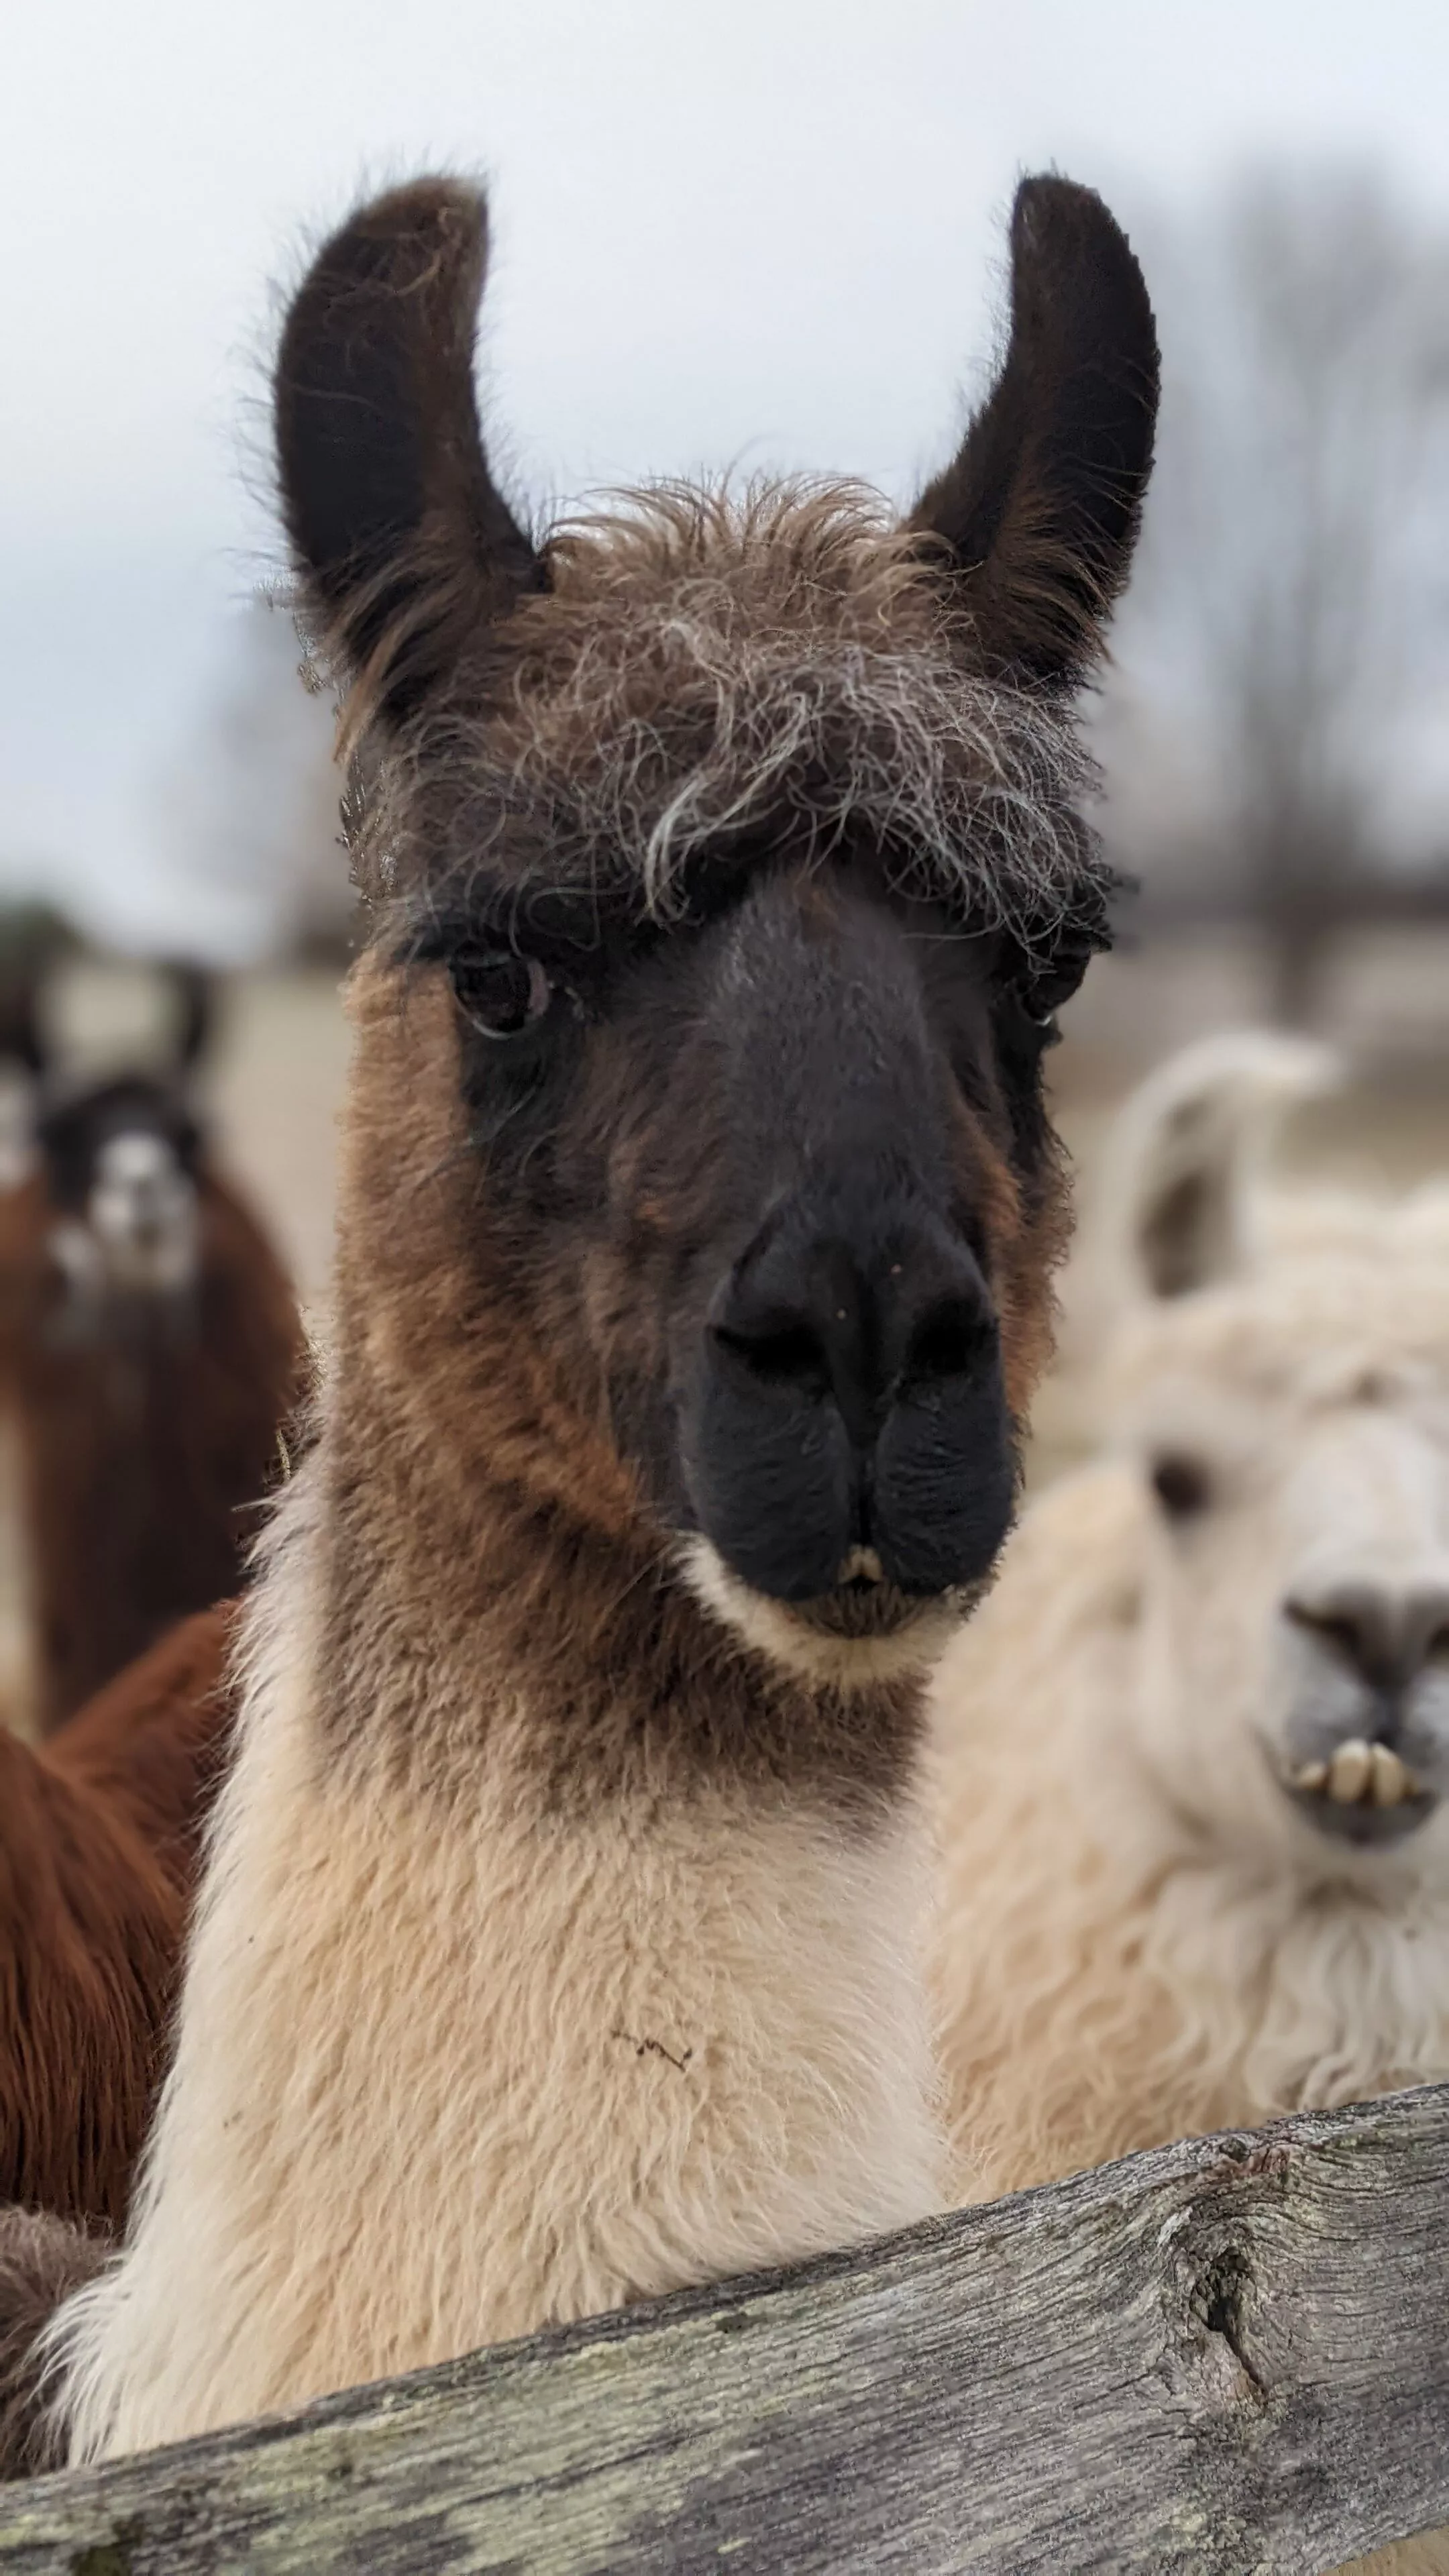 A portrait image of a llama named Danny